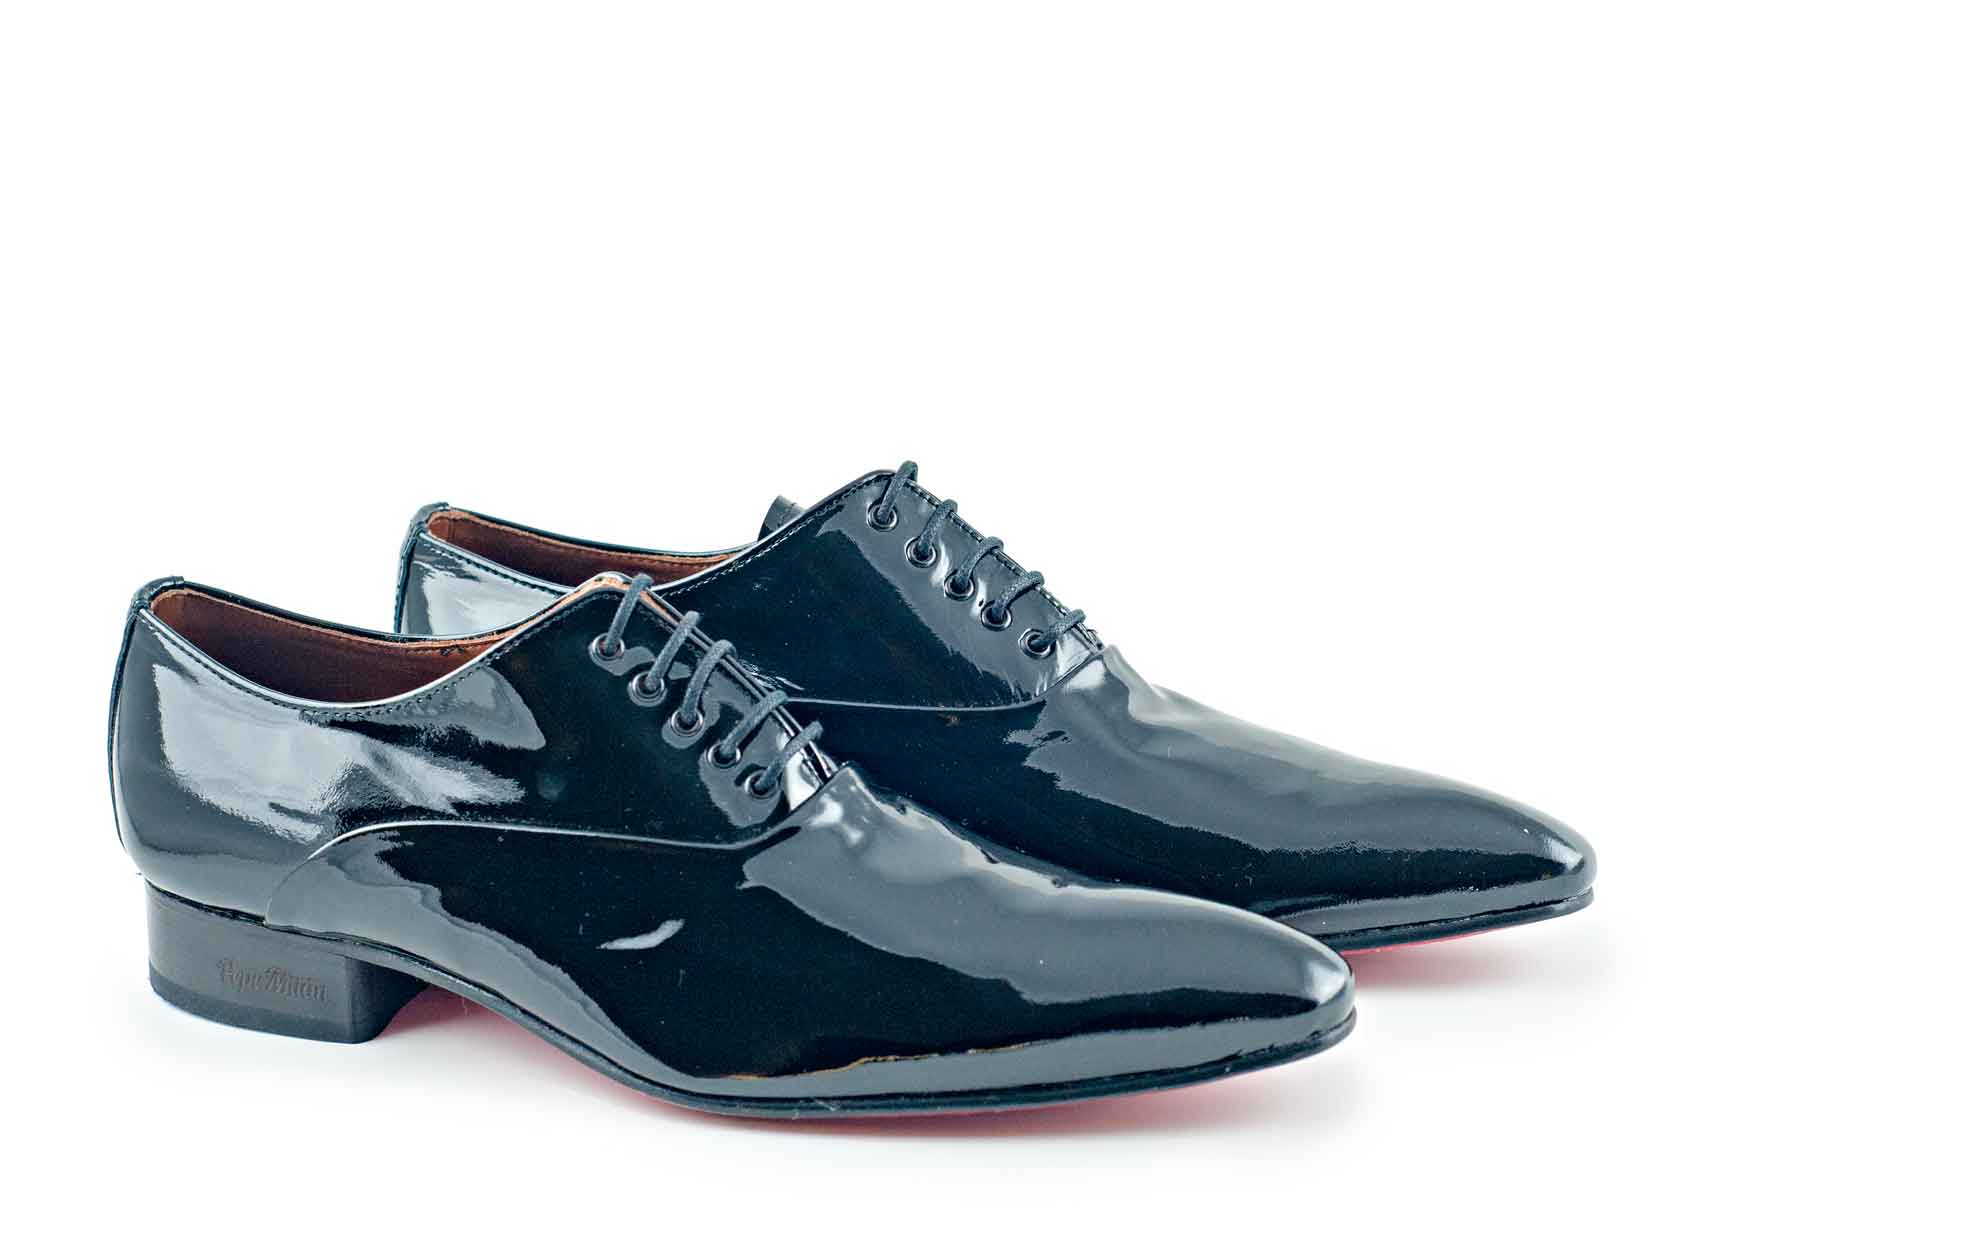 Sinatra shoe, manufactured in black 